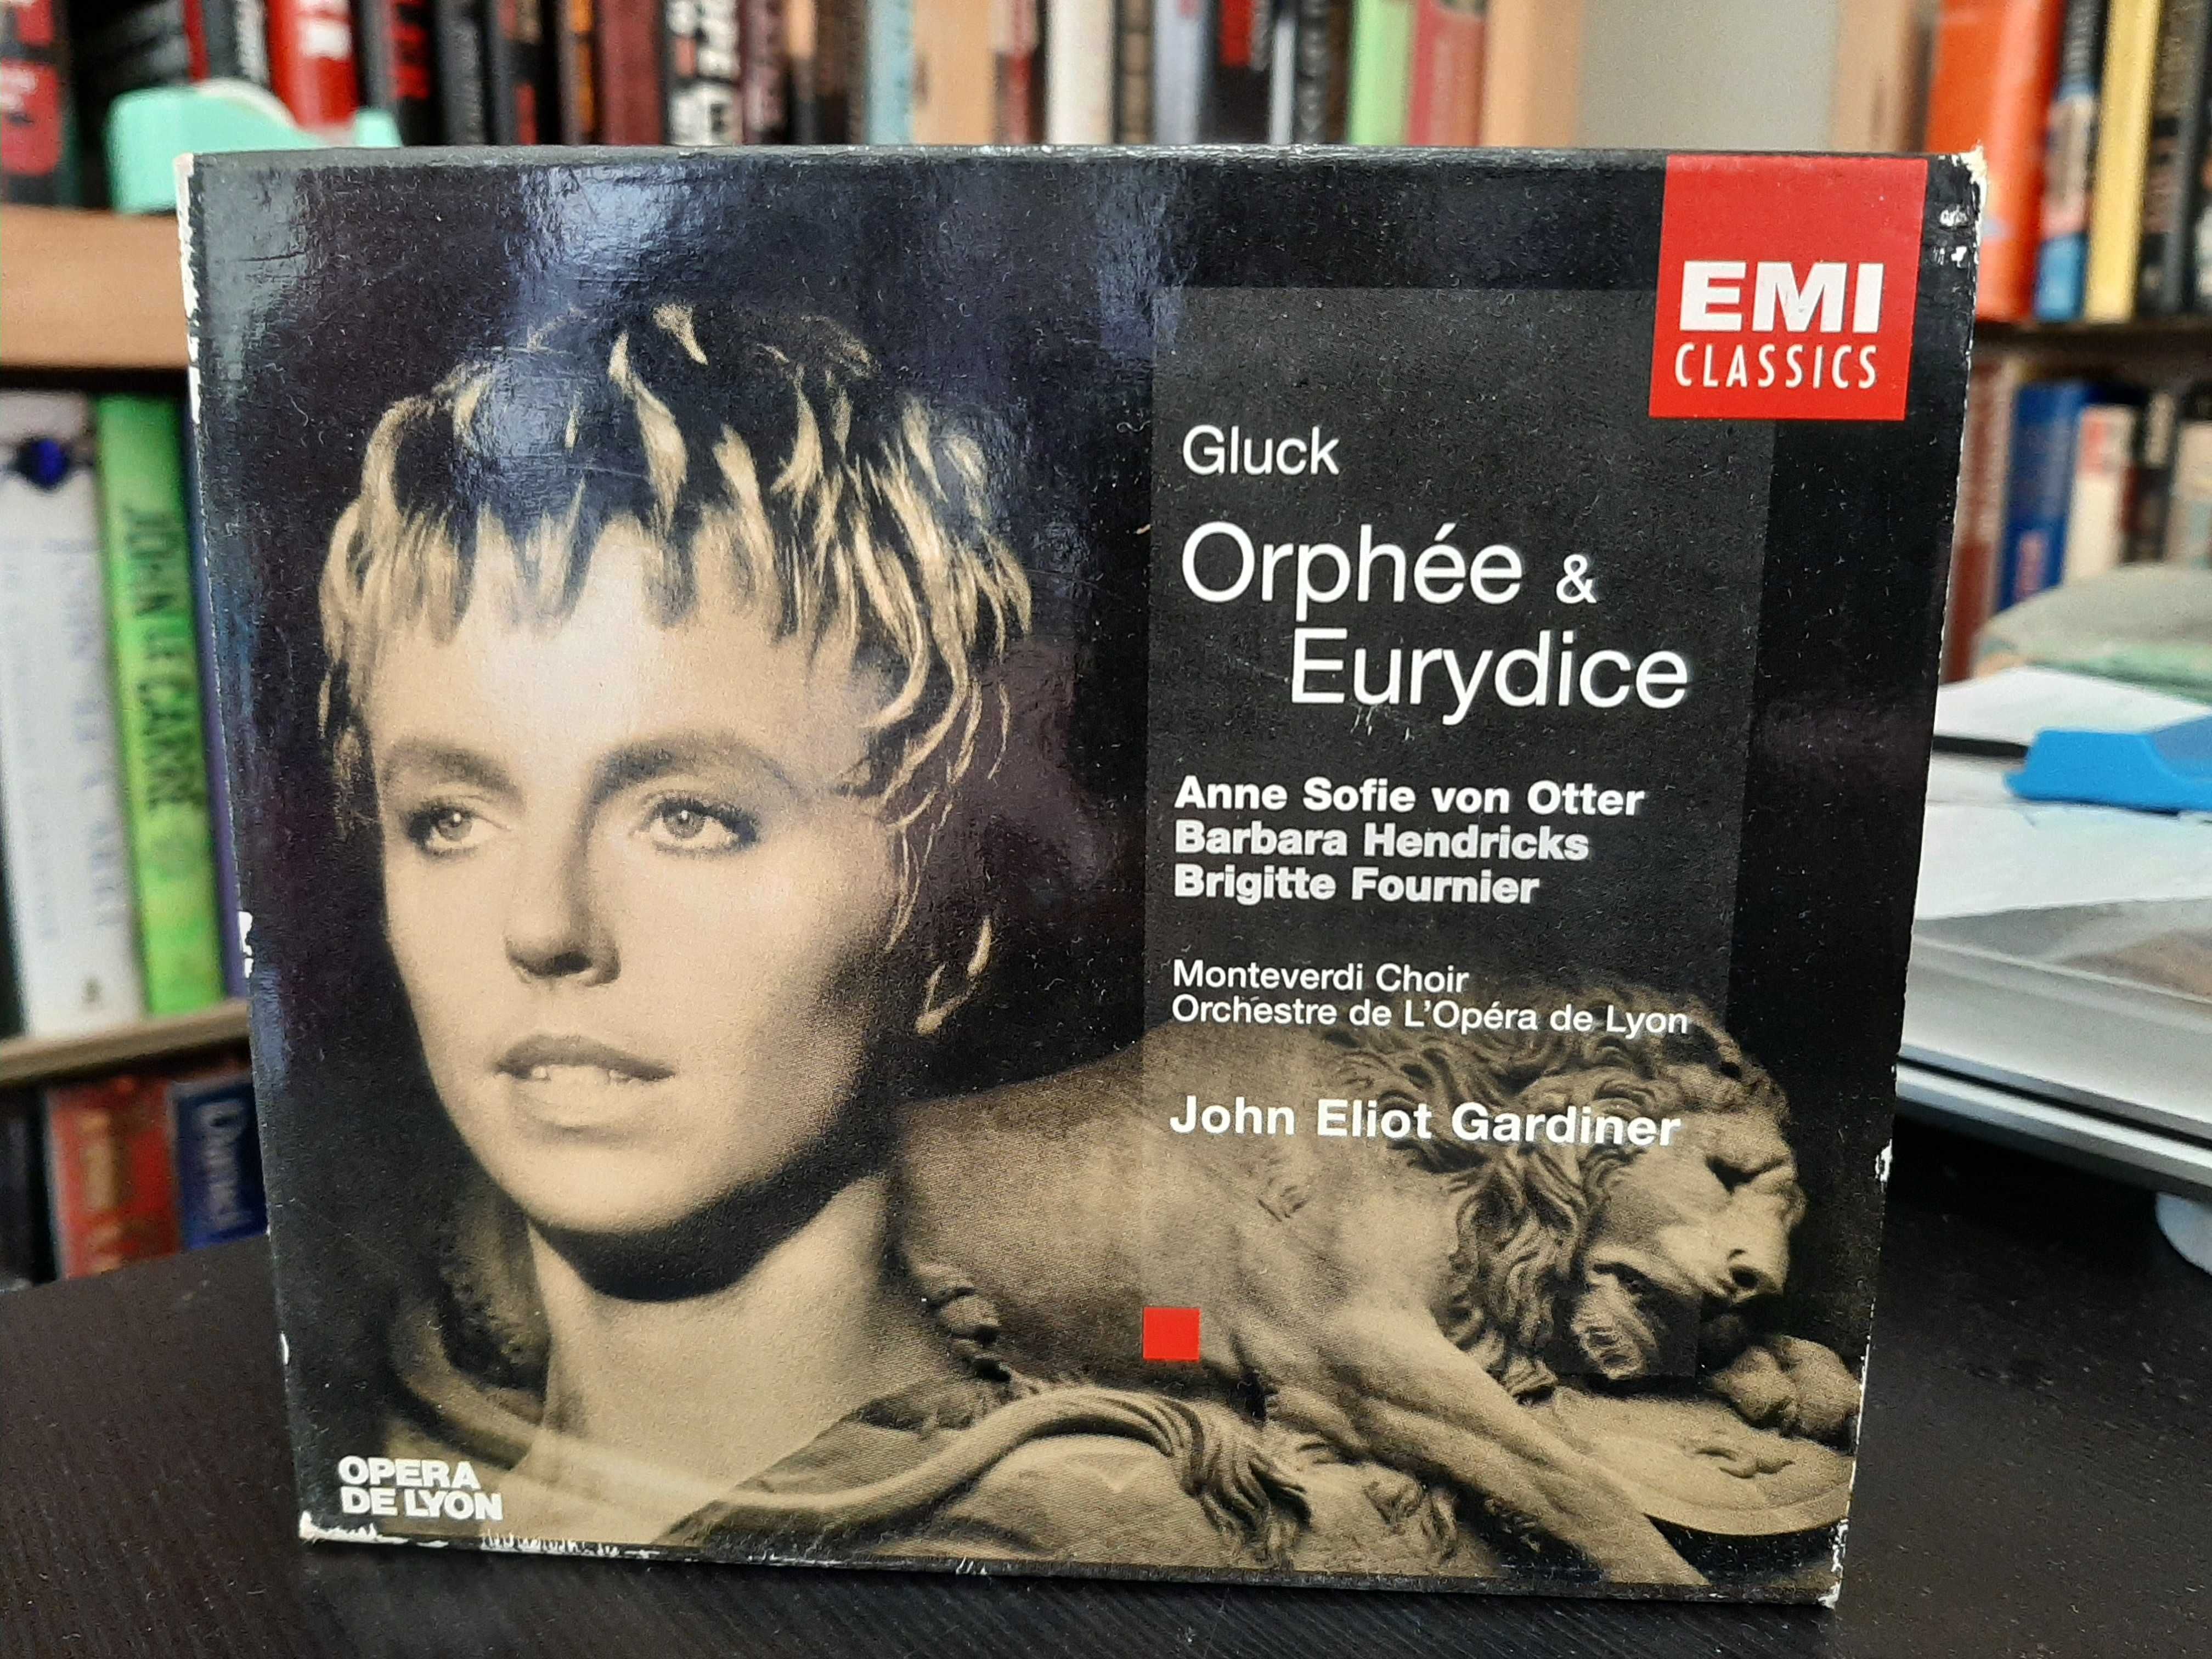 Gluck – Orphée & Eurydice – Von Otter, Barbara Hendricks – JE Gardiner